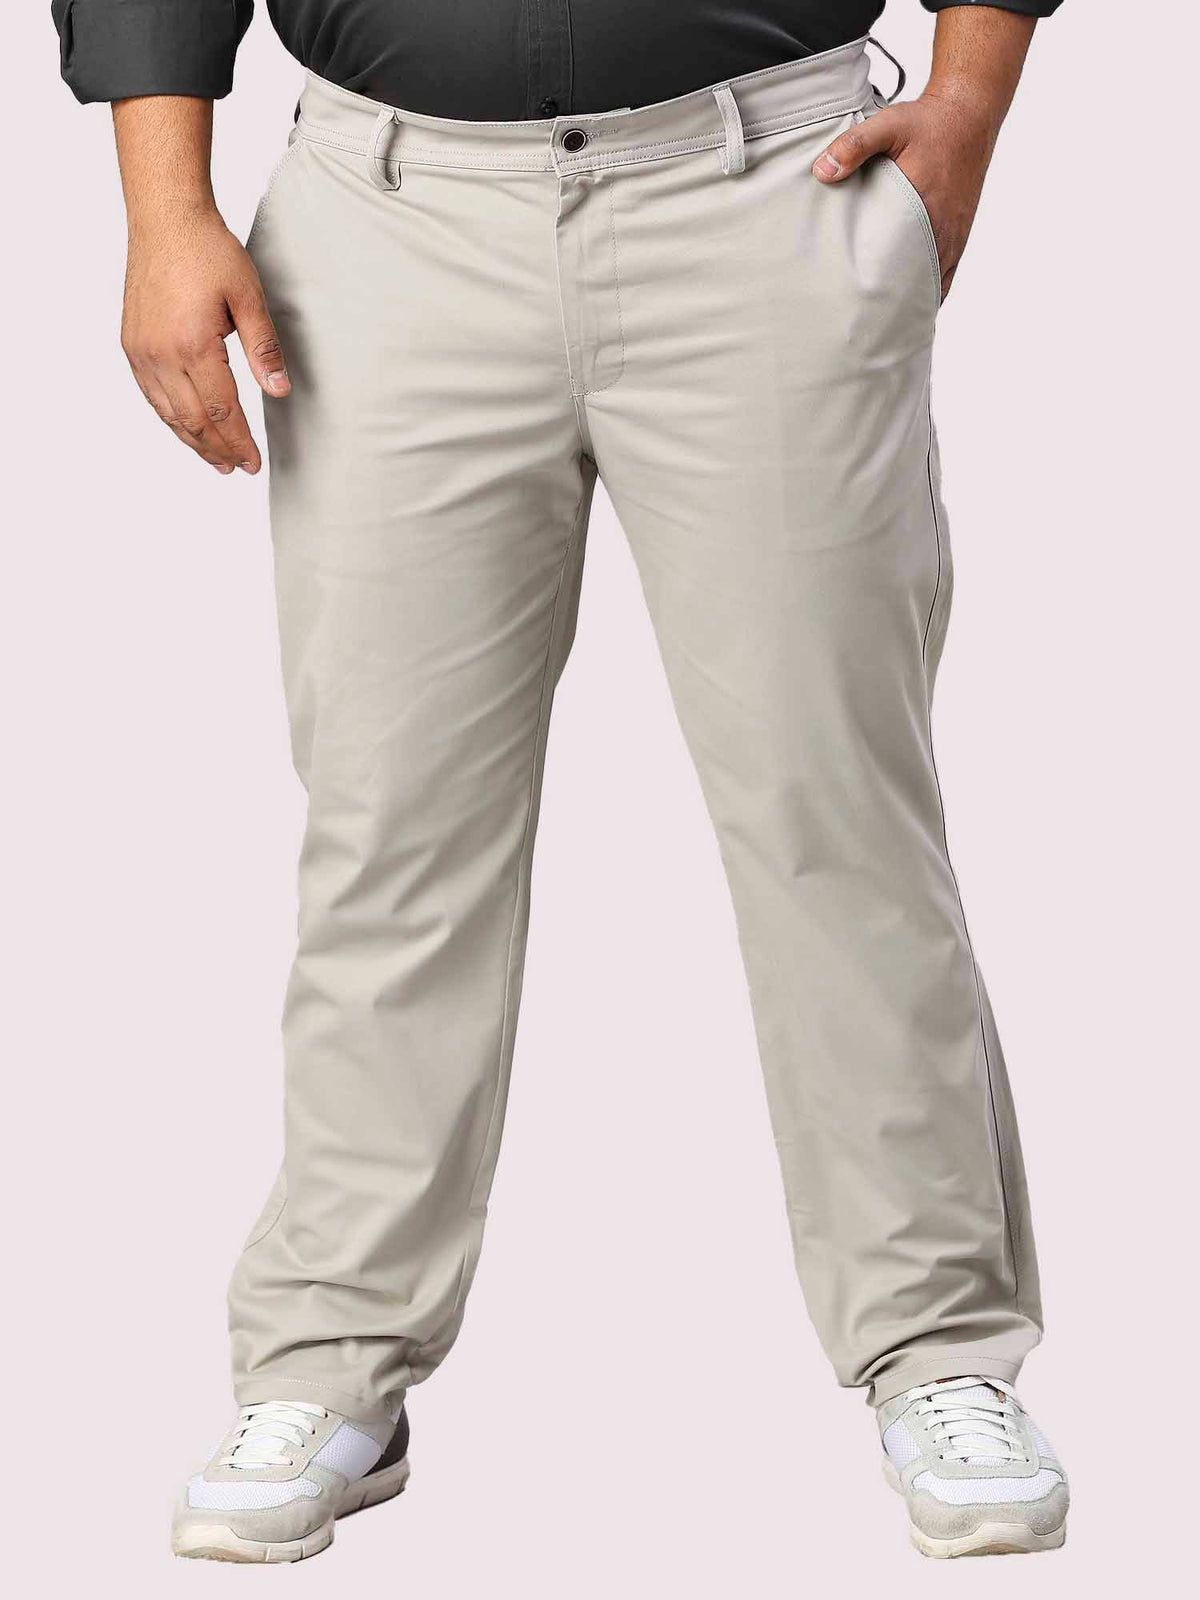 Cream Solid Cotton Trouser Men's Plus Size - Guniaa Fashions